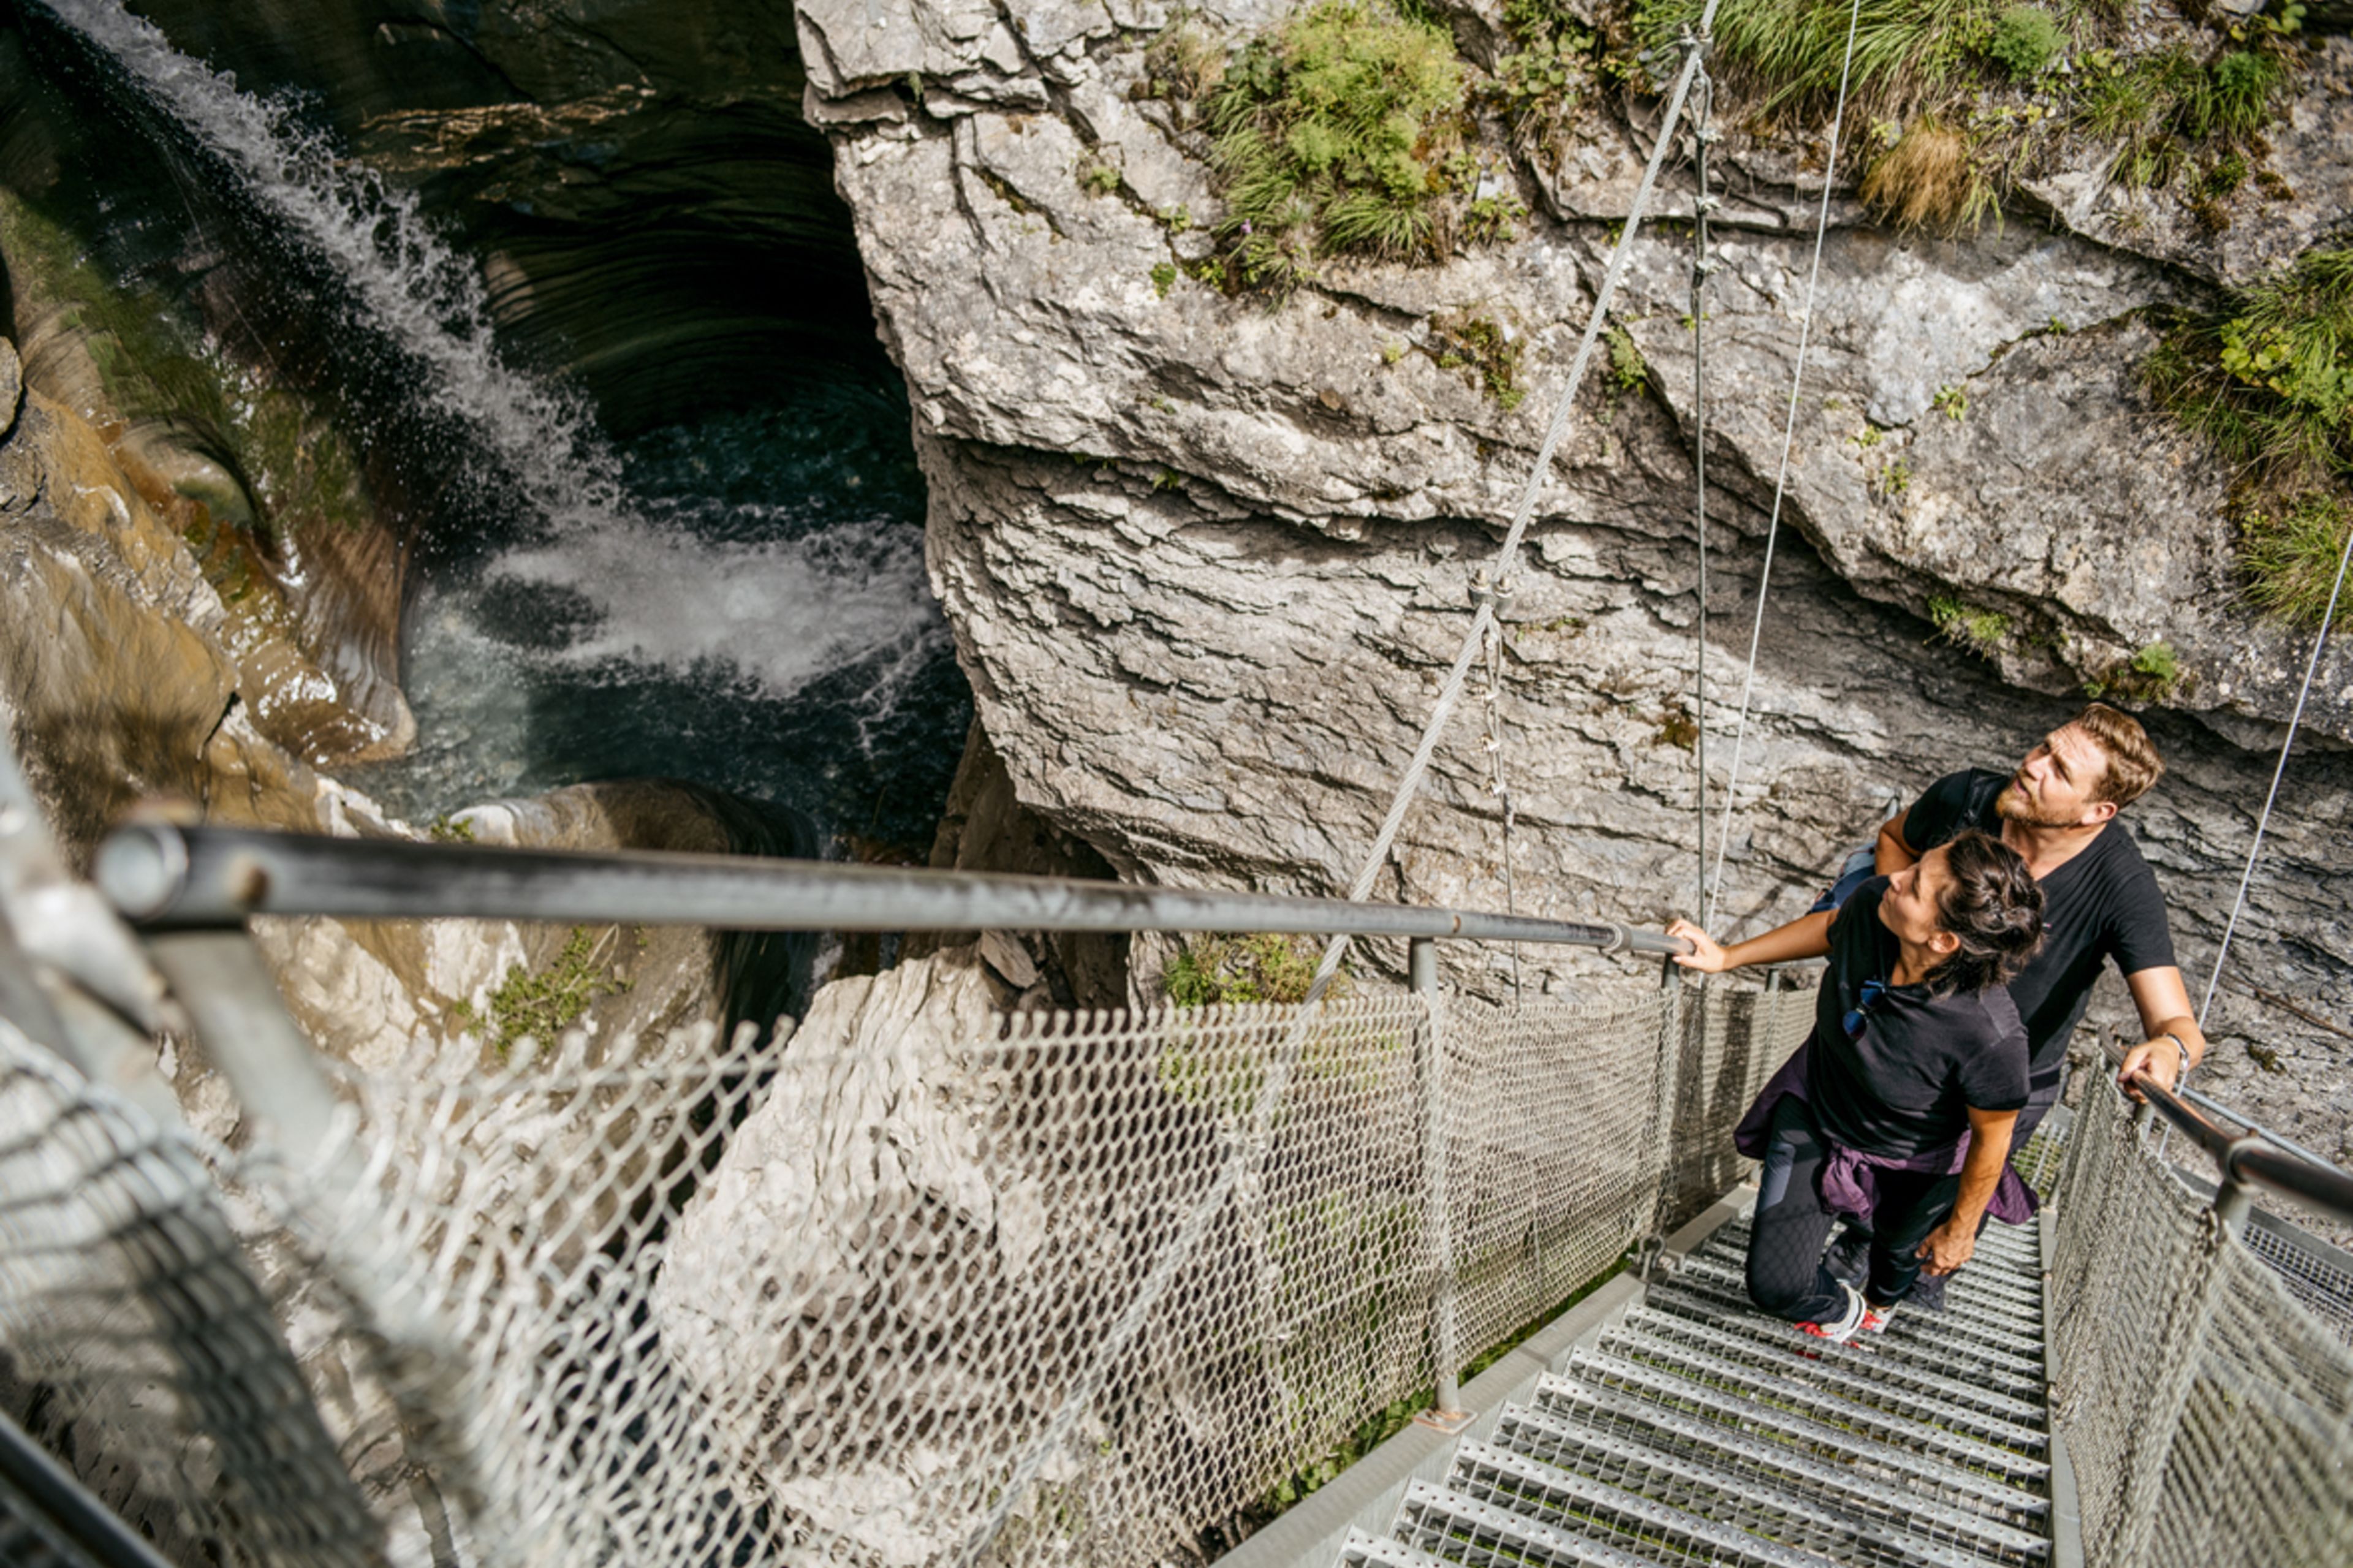 Von den zwei steilen Treppen lässt sich der Wasserfall am besten bestaunen, Wallis, Schweiz